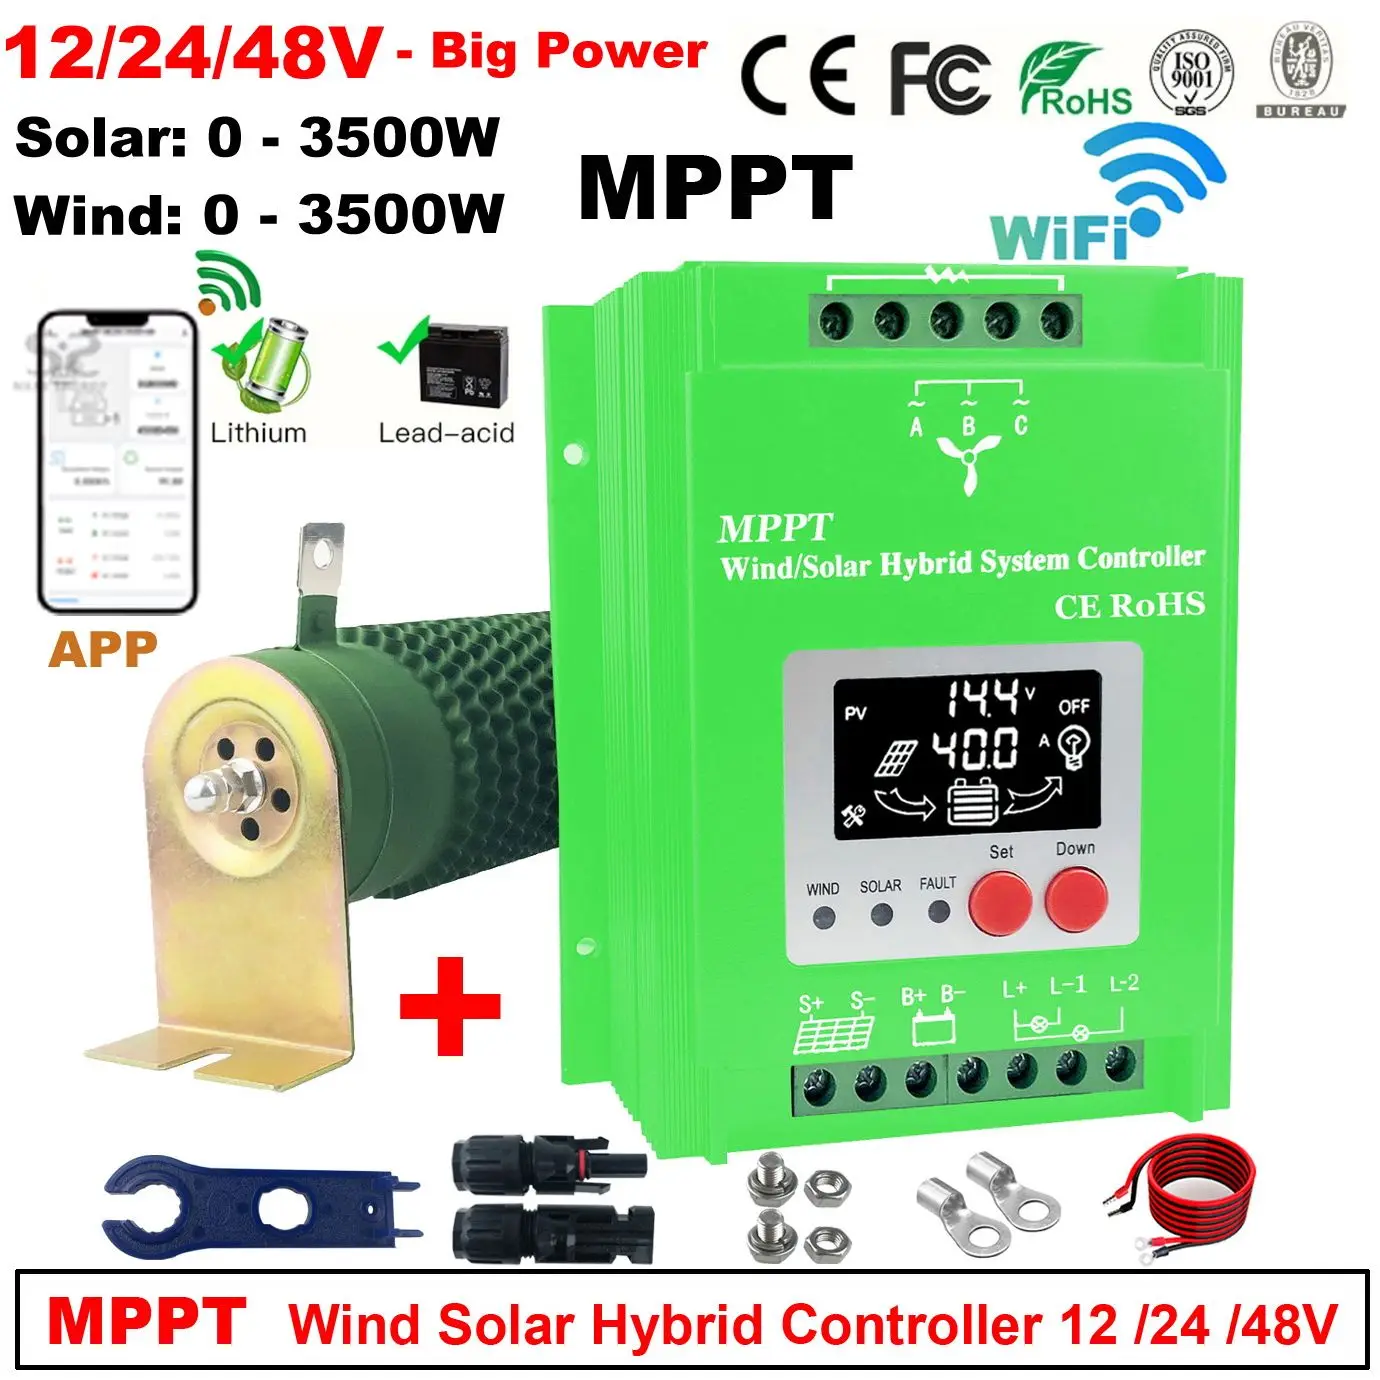 

NEW 6000W 5000W 4000W 3000W 12V 24V 48V Wind Solar MPPT Hybrid Controller Pioneer Version Charge Lithium Lead Acid GEL Battery